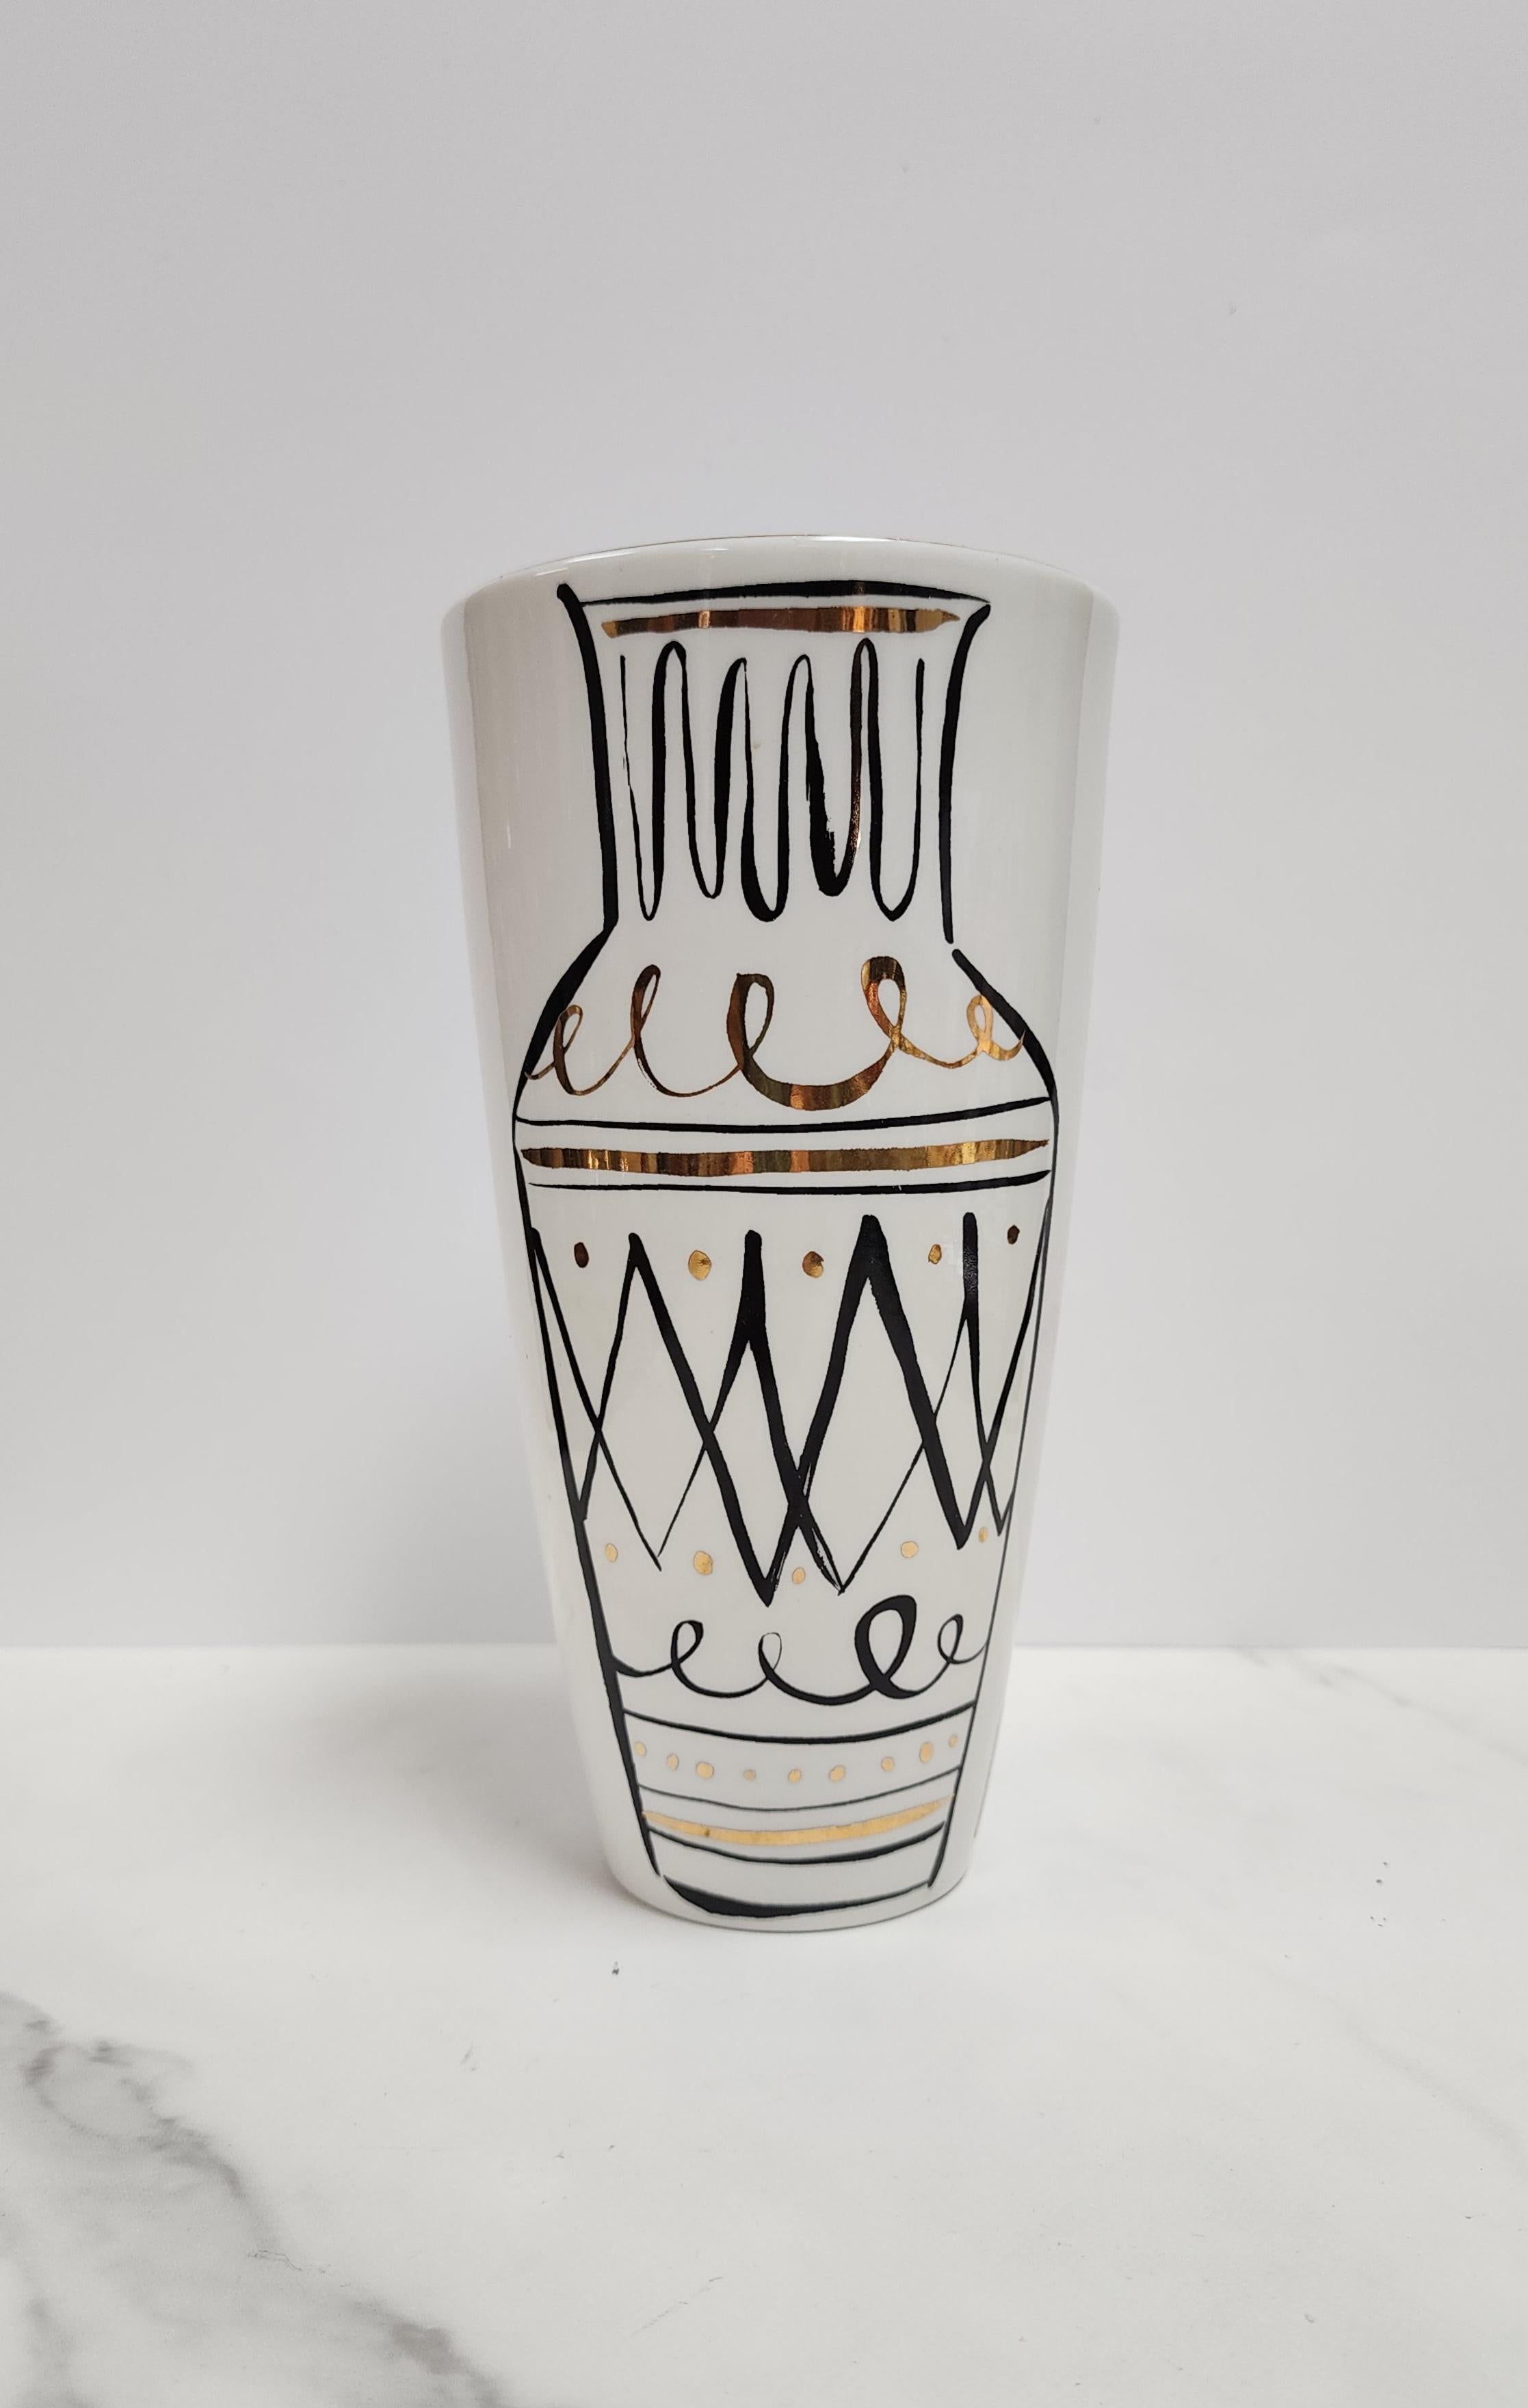 Diese elfenbeinfarbene und goldene Lenox-Vase stammt aus der Collaboration mit Kate Spade unter dem Namen Daisy Place Kate Spade New York. Die Kunst der Vase in der Vase im Scrafitto-Stil ist skurril und erinnert an die klassische italienische